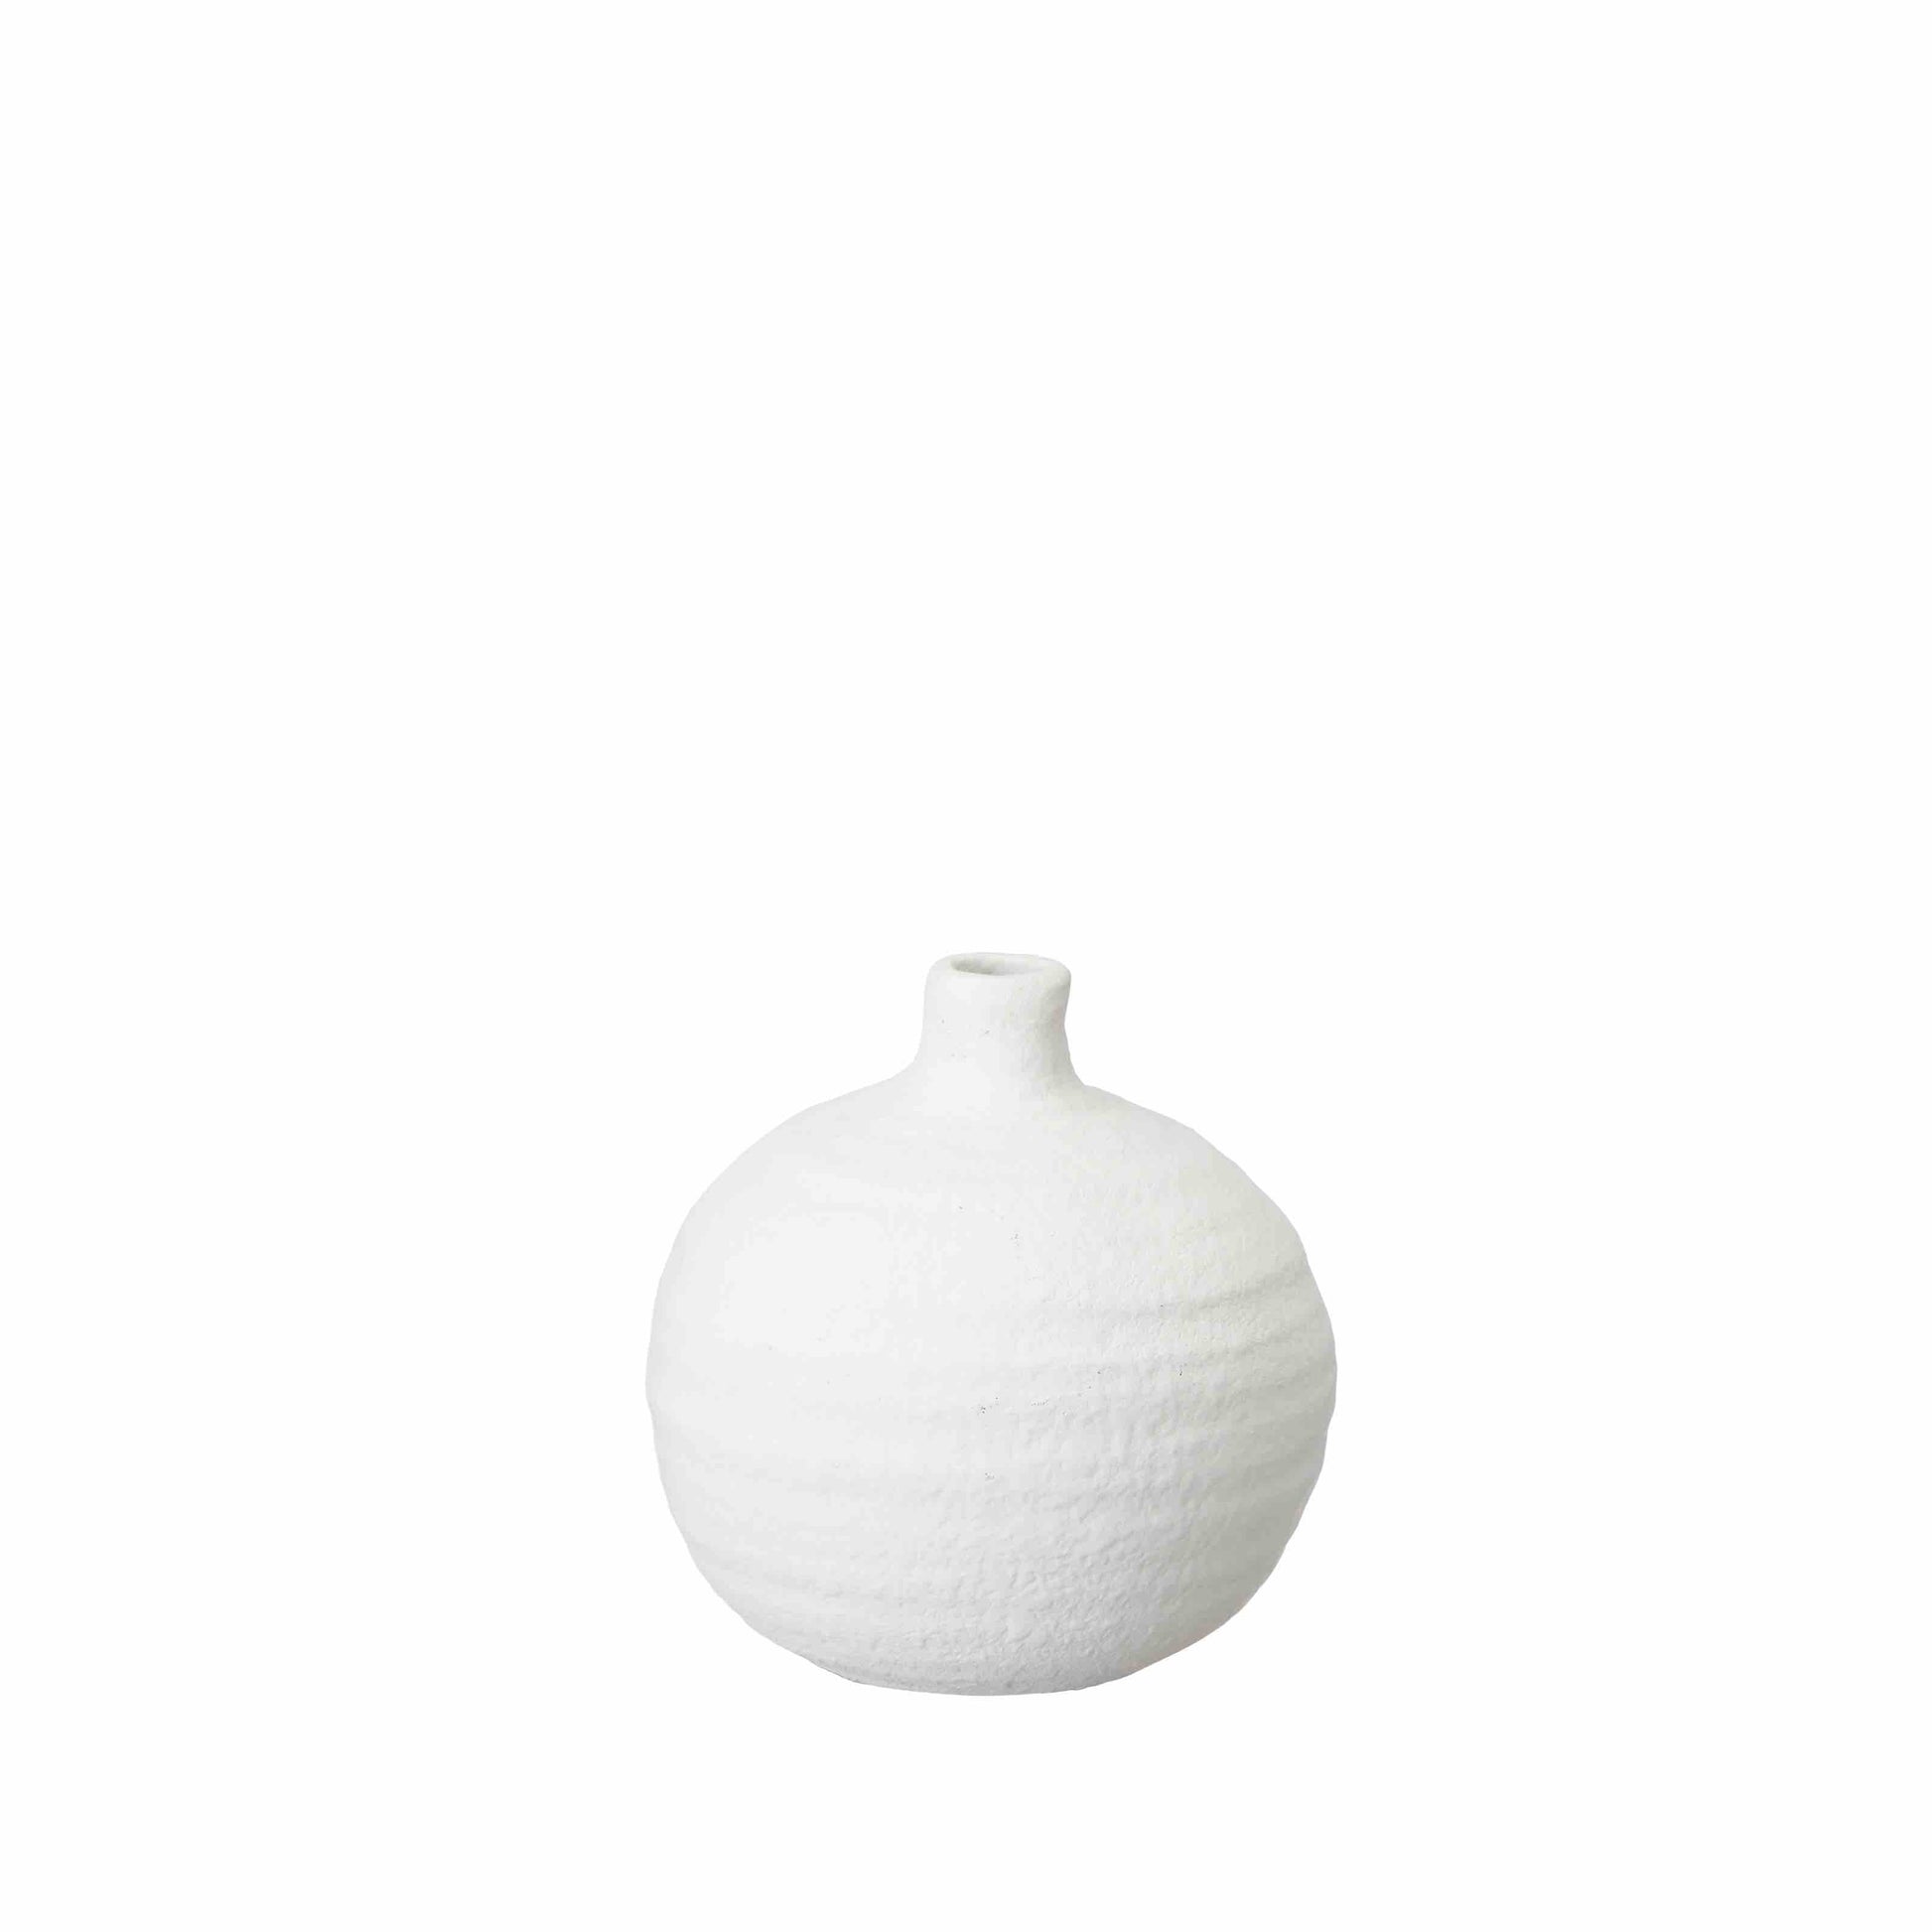 Keramikvase ALBA weiß mit matter Oberfläche, Wikholm Form, skandinavische Deko, monochrome-home Buxtehude 